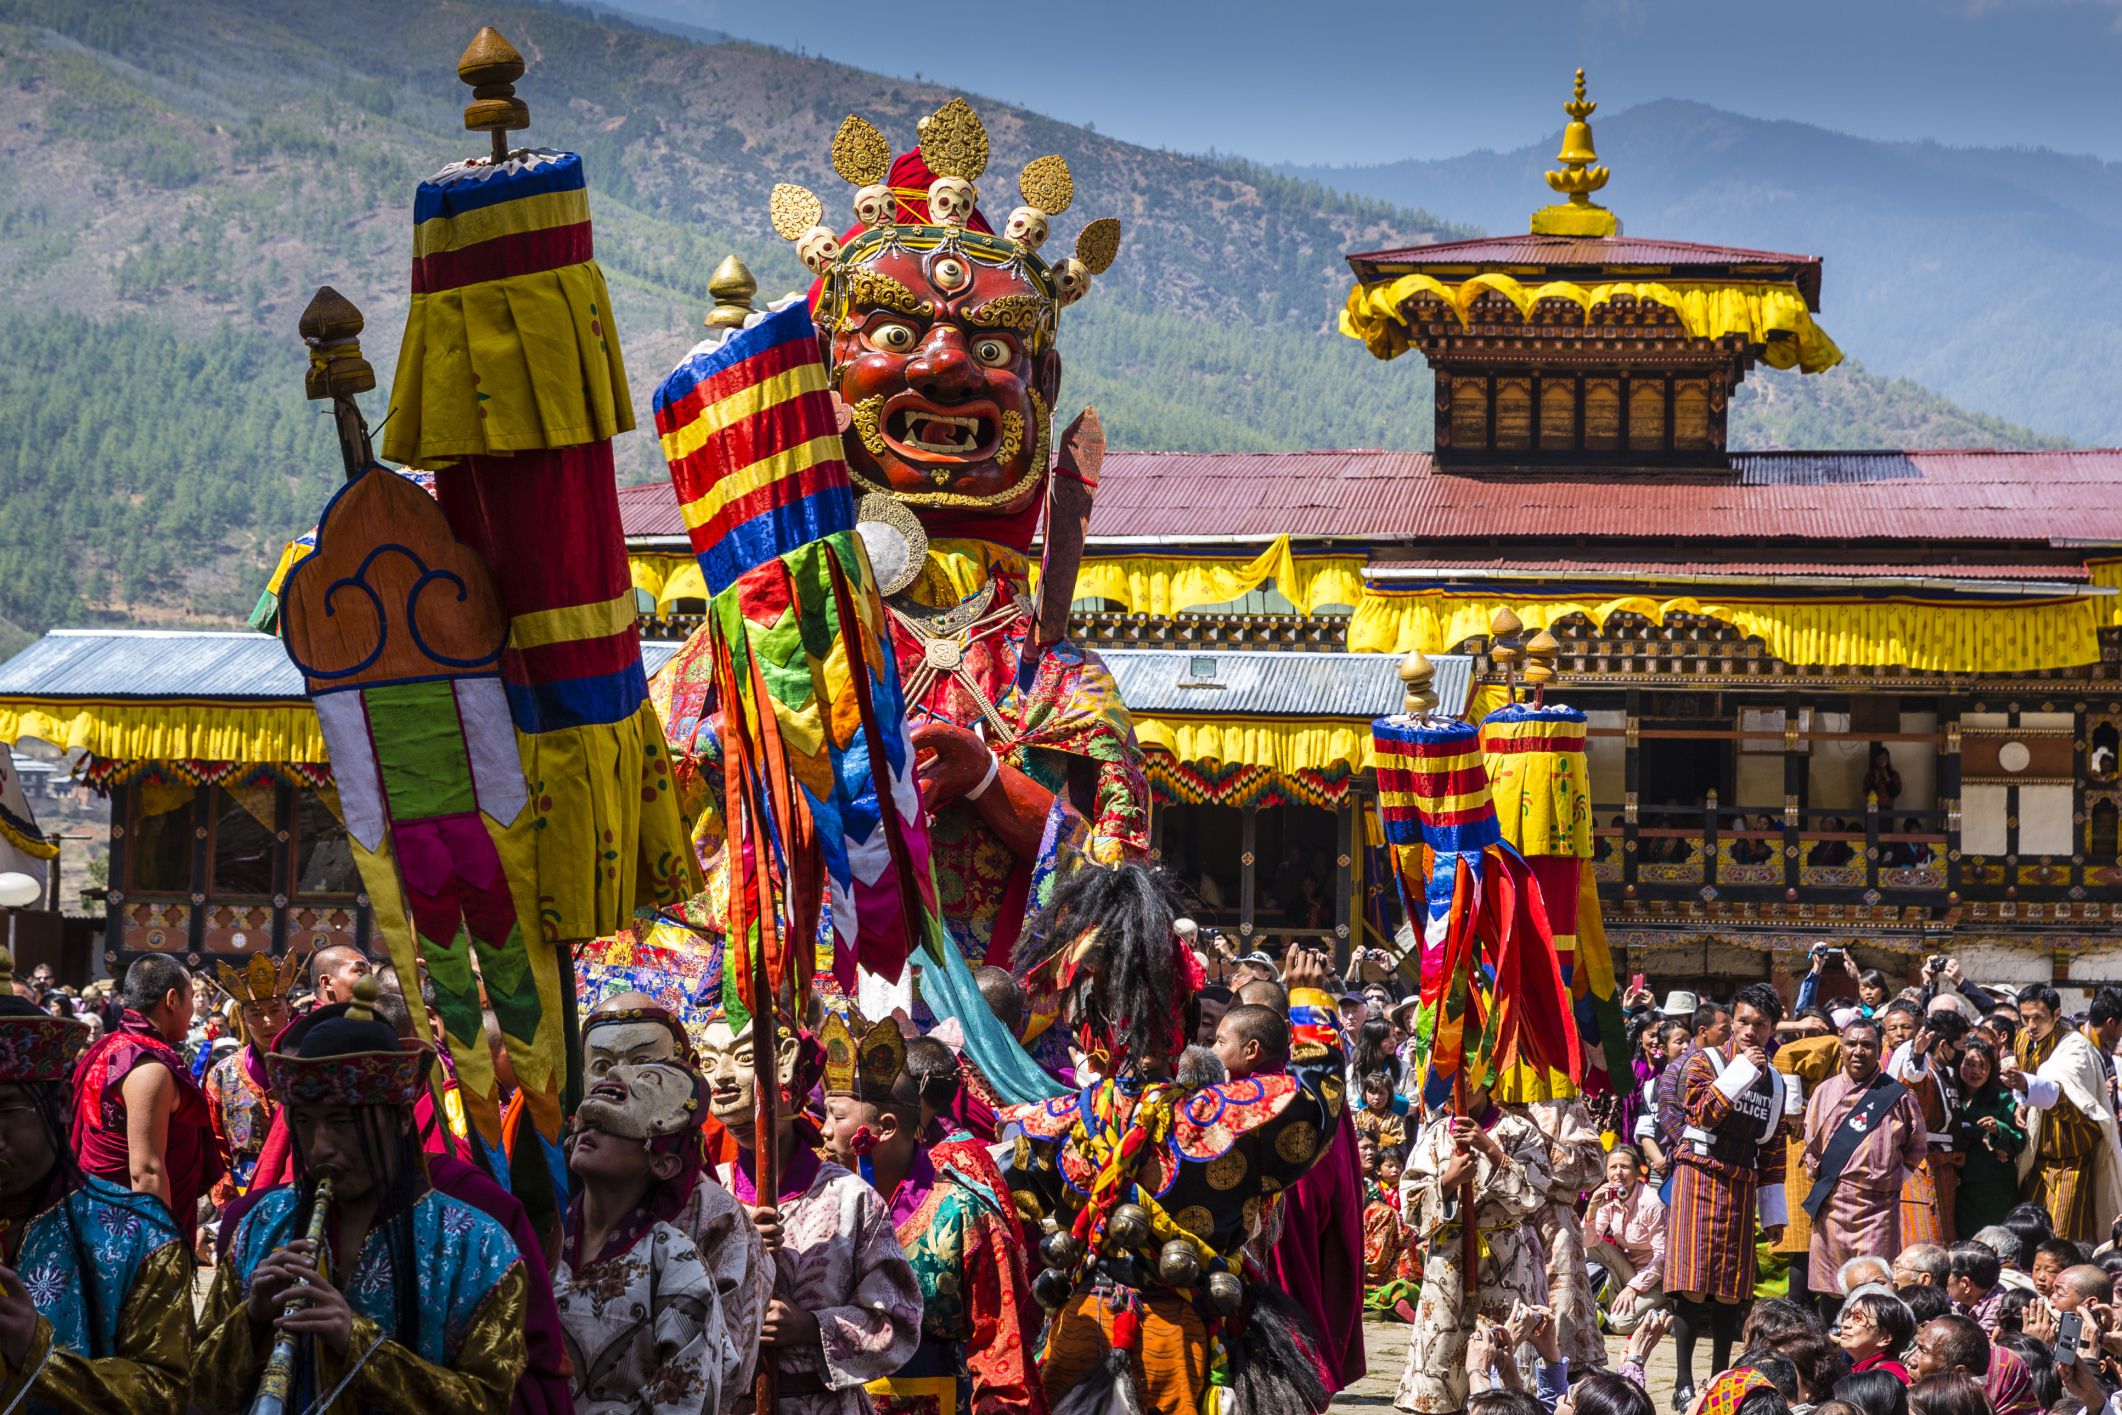 A range of festival bhutan 